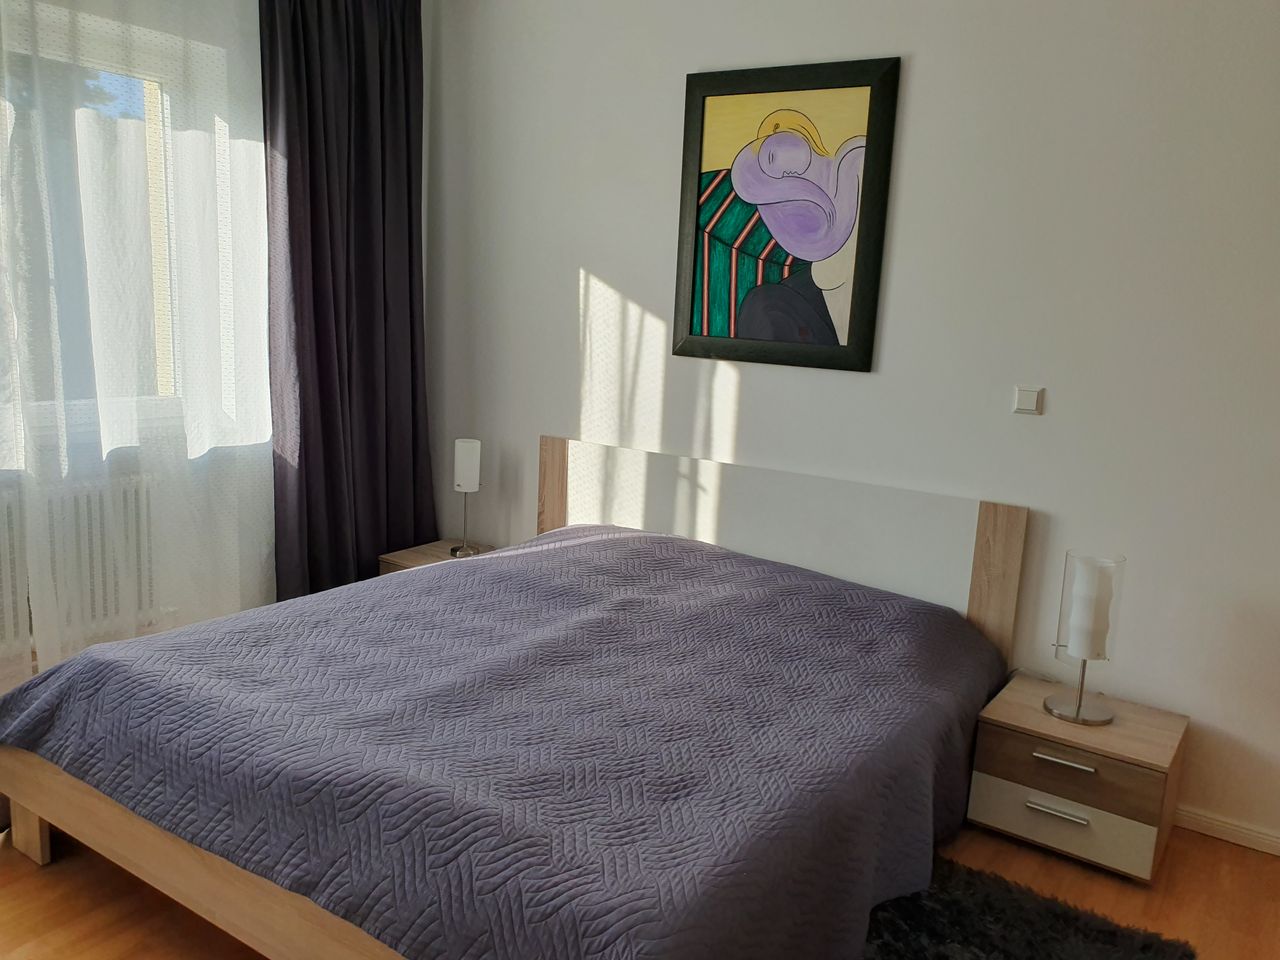 Voll ausgestattete 2-Zimmer Wohnung in Zehlendorf